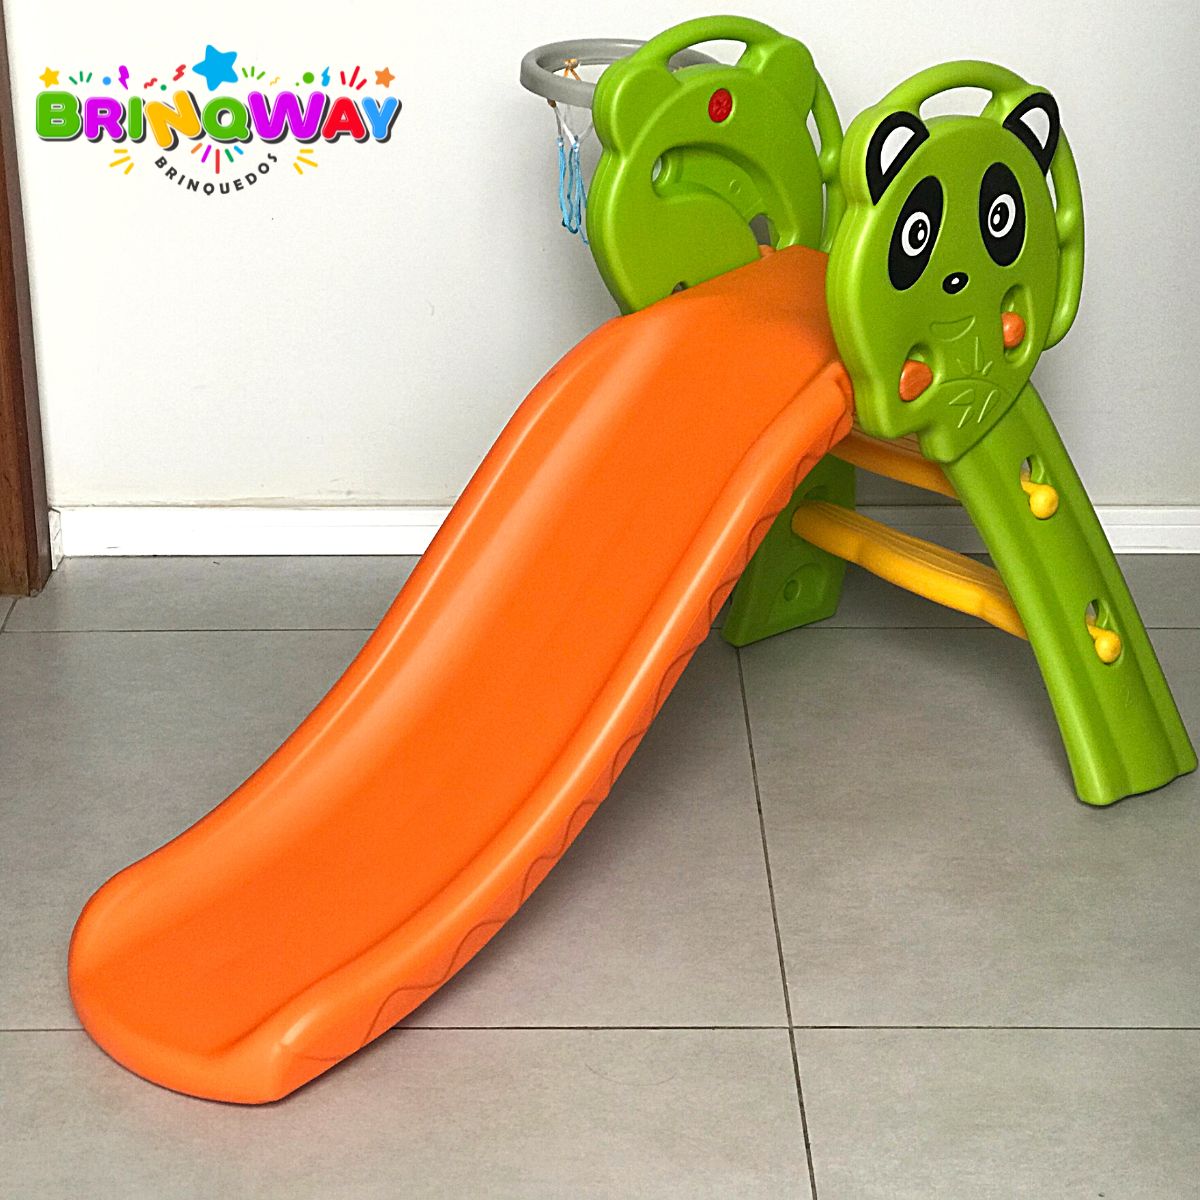 Escorregador Infantil - Eco Playground